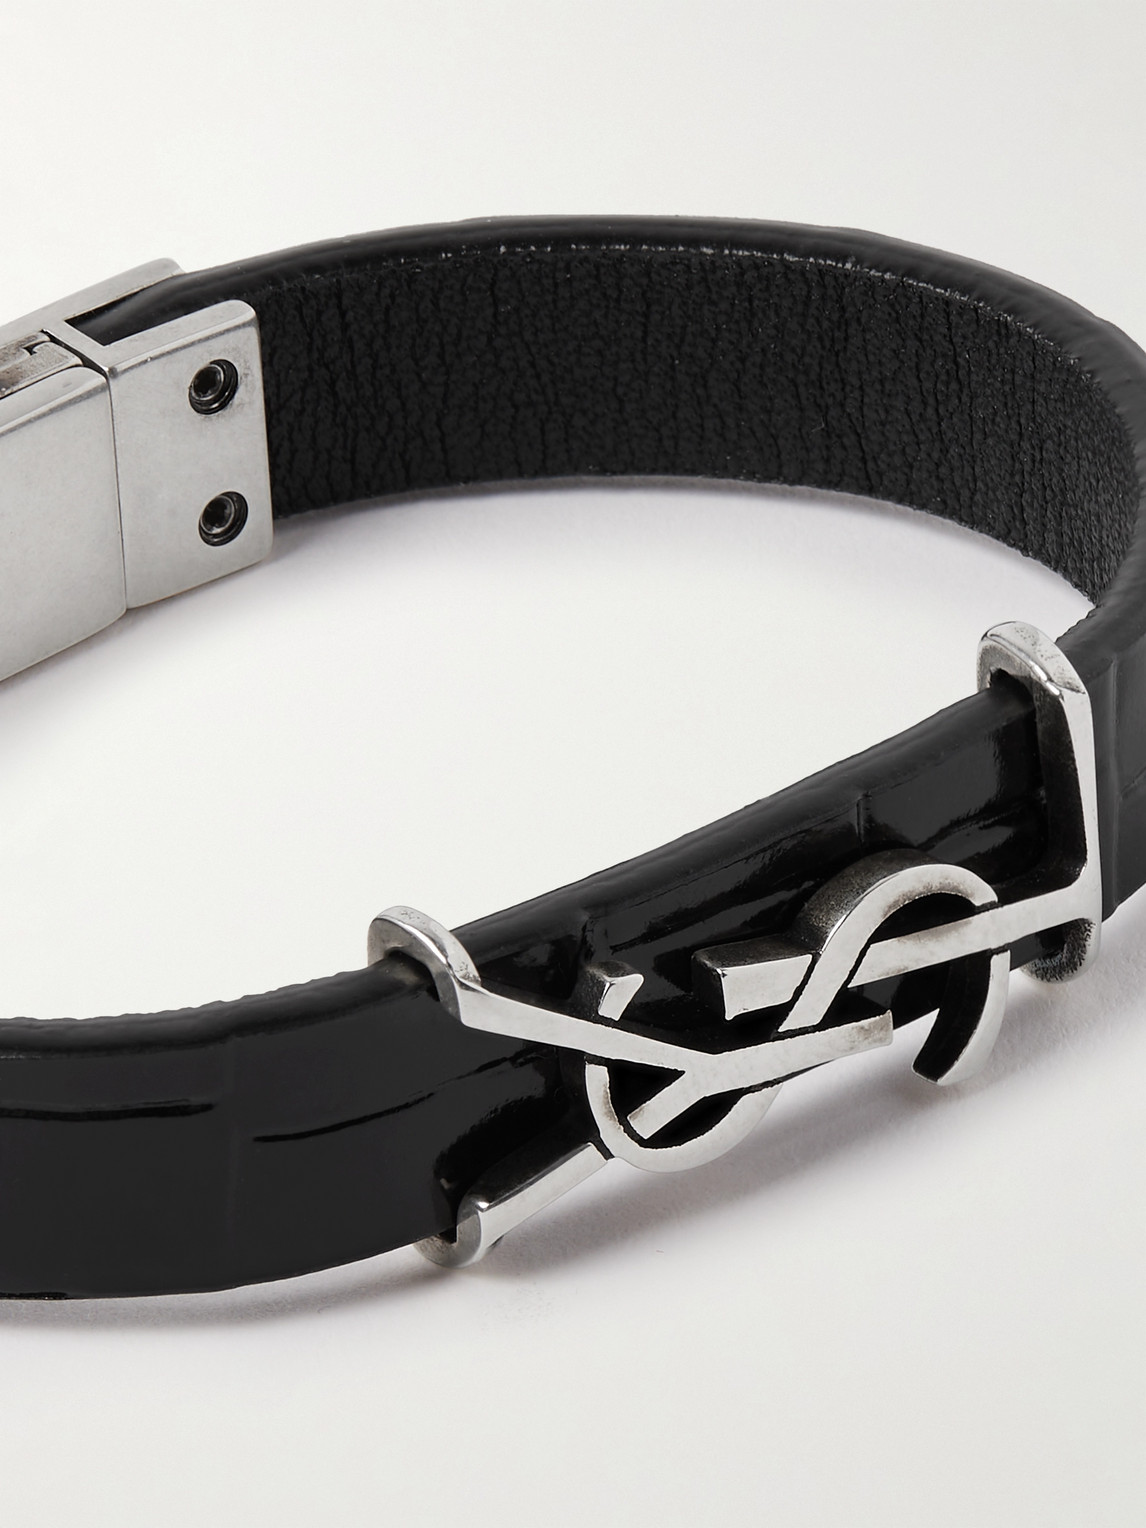 Shop Saint Laurent Cassandre Croc-effect Leather And Silver-tone Bracelet In Black